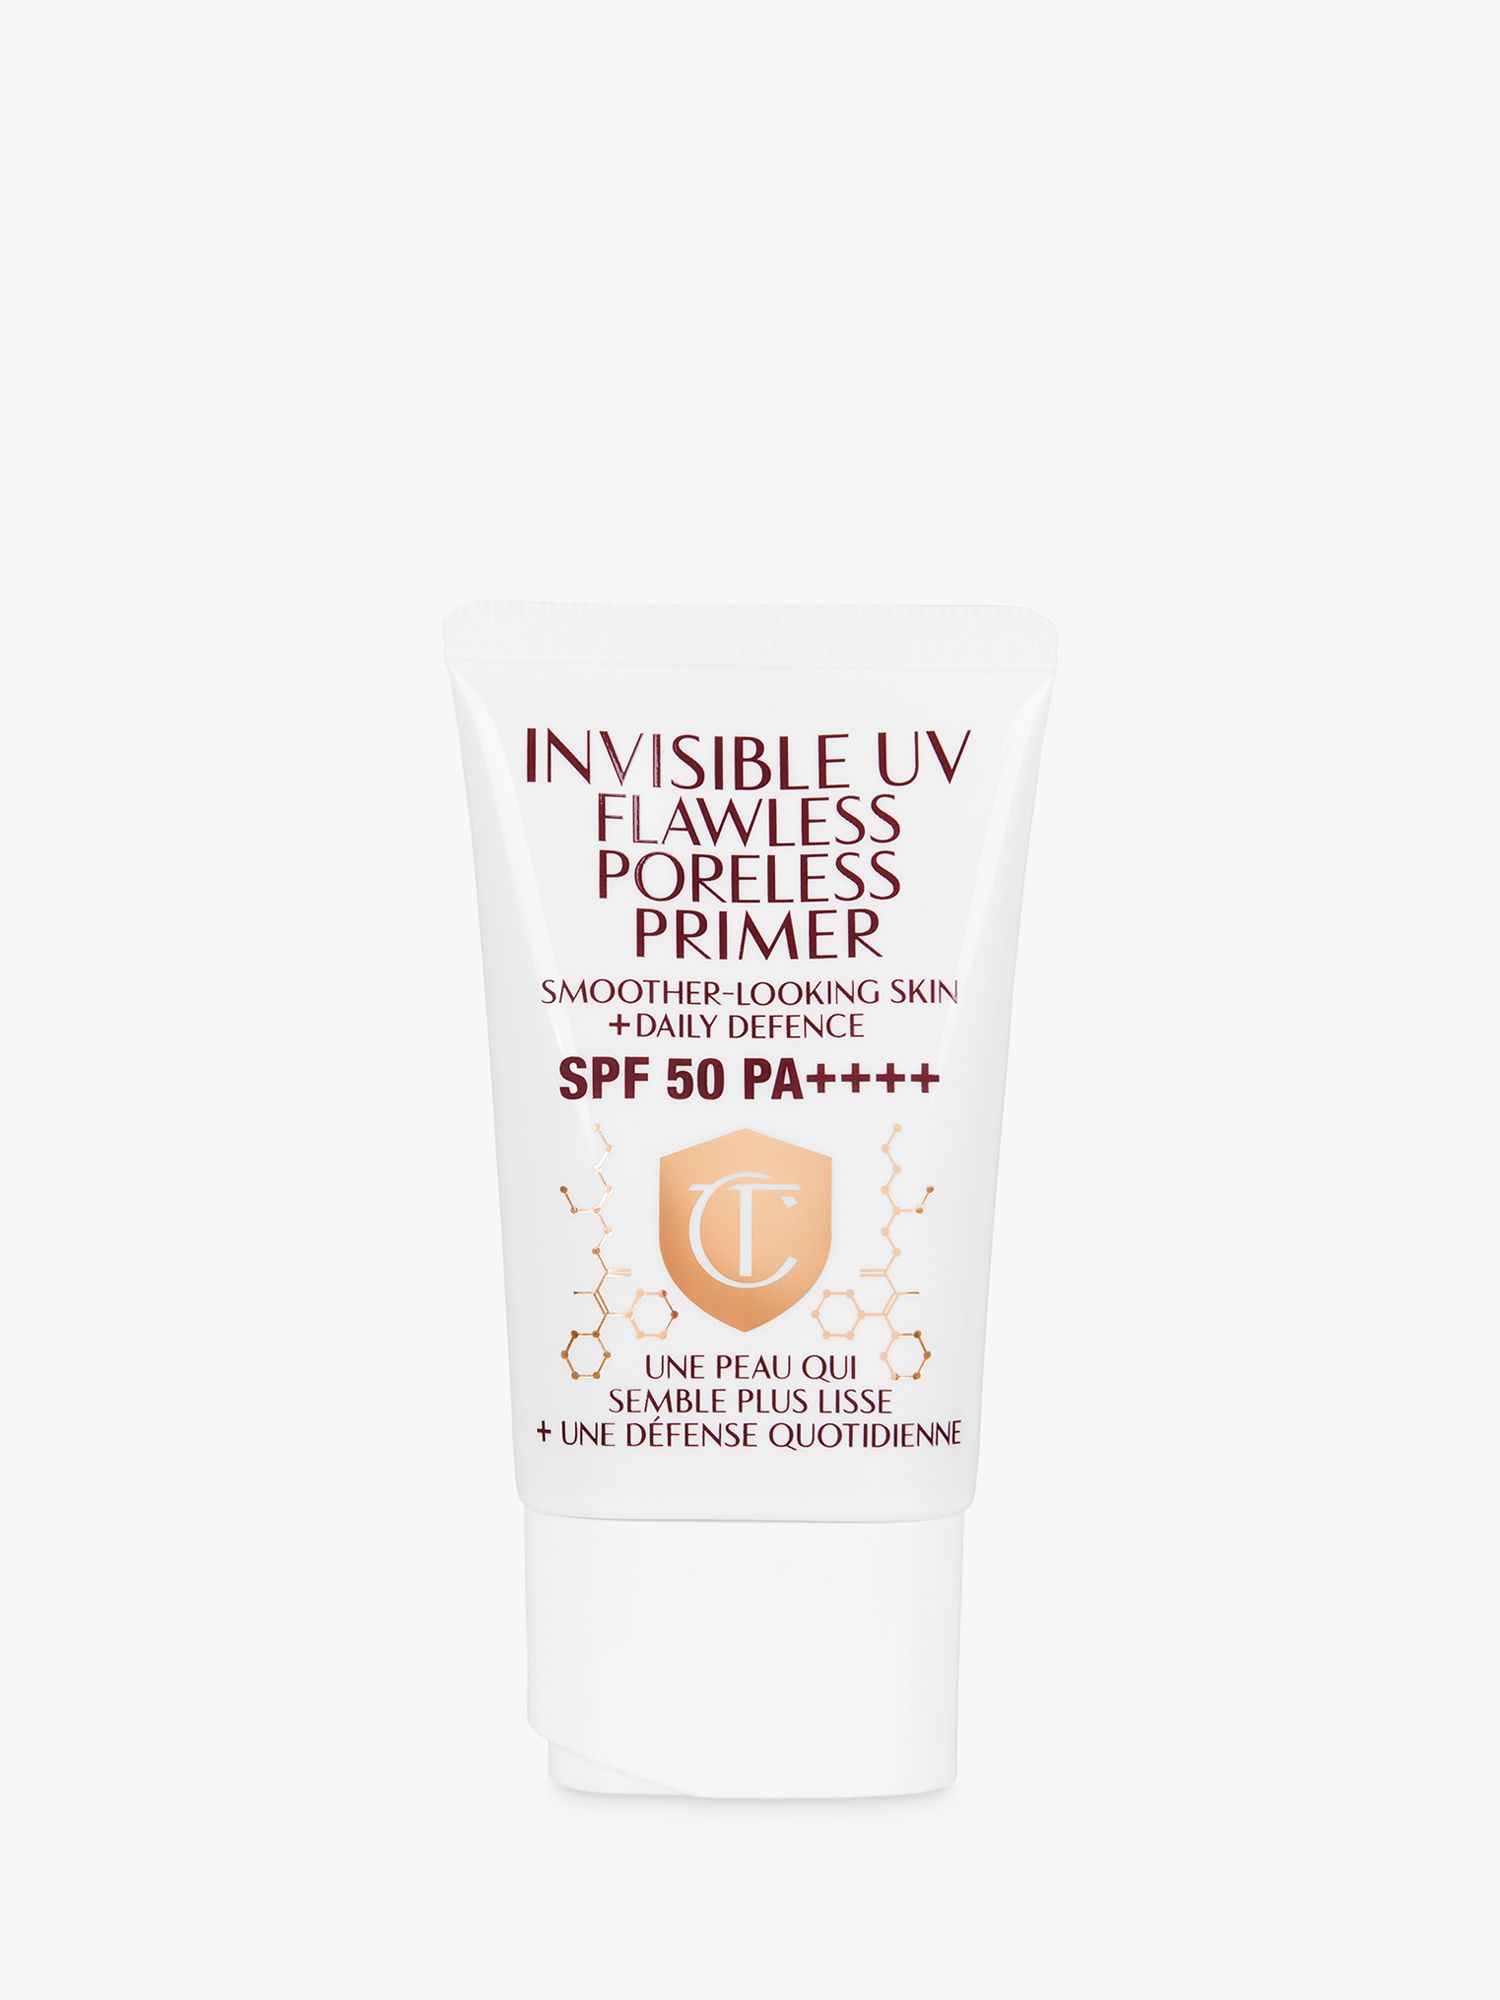 Charlotte Tilbury Invisible UV Flawless Poreless Primer SPF 50, 30ml 1